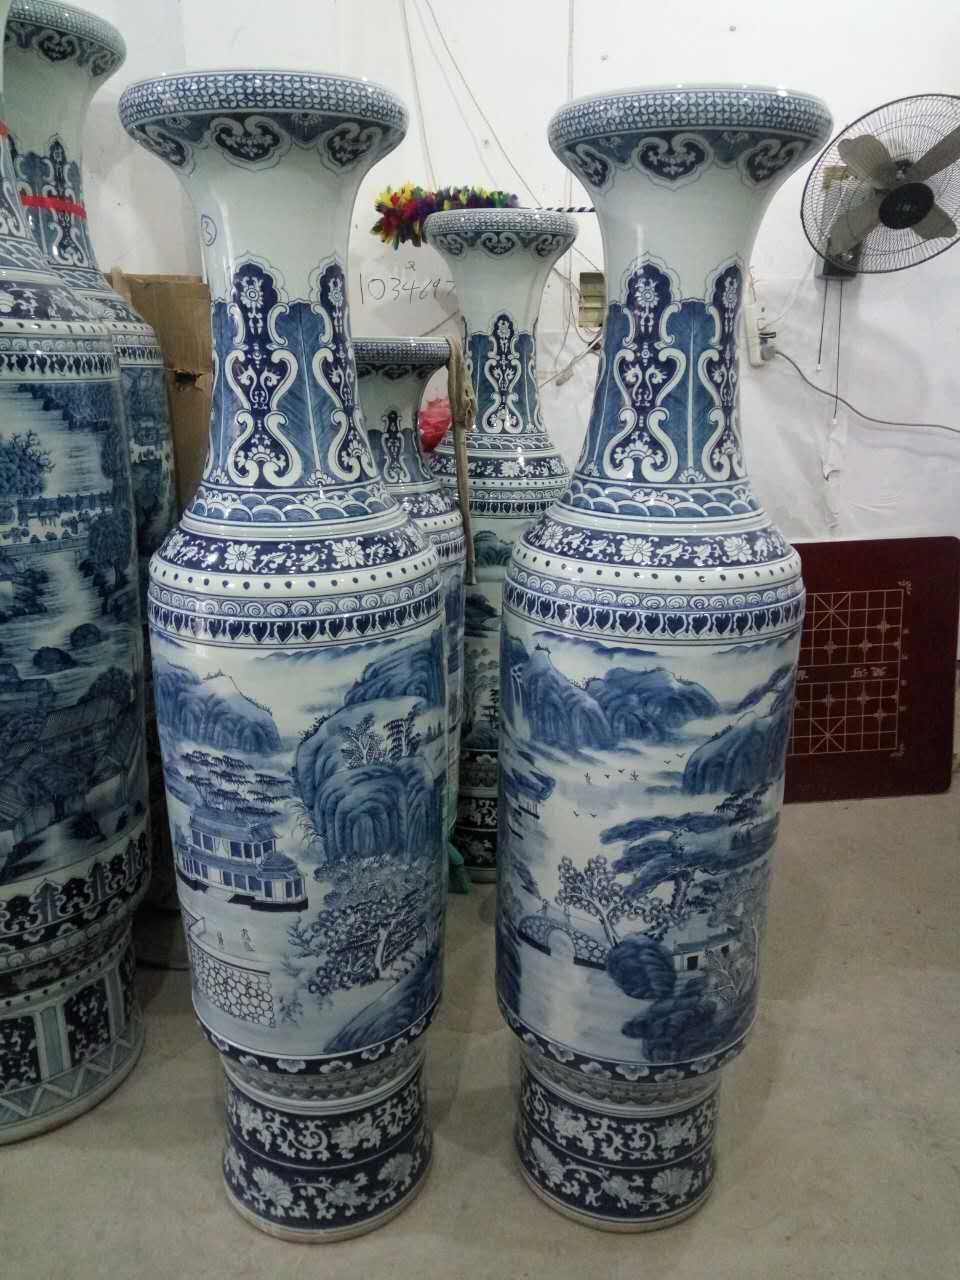 景德镇陶瓷厂专业生产陶瓷花瓶,礼品陶瓷花瓶定制